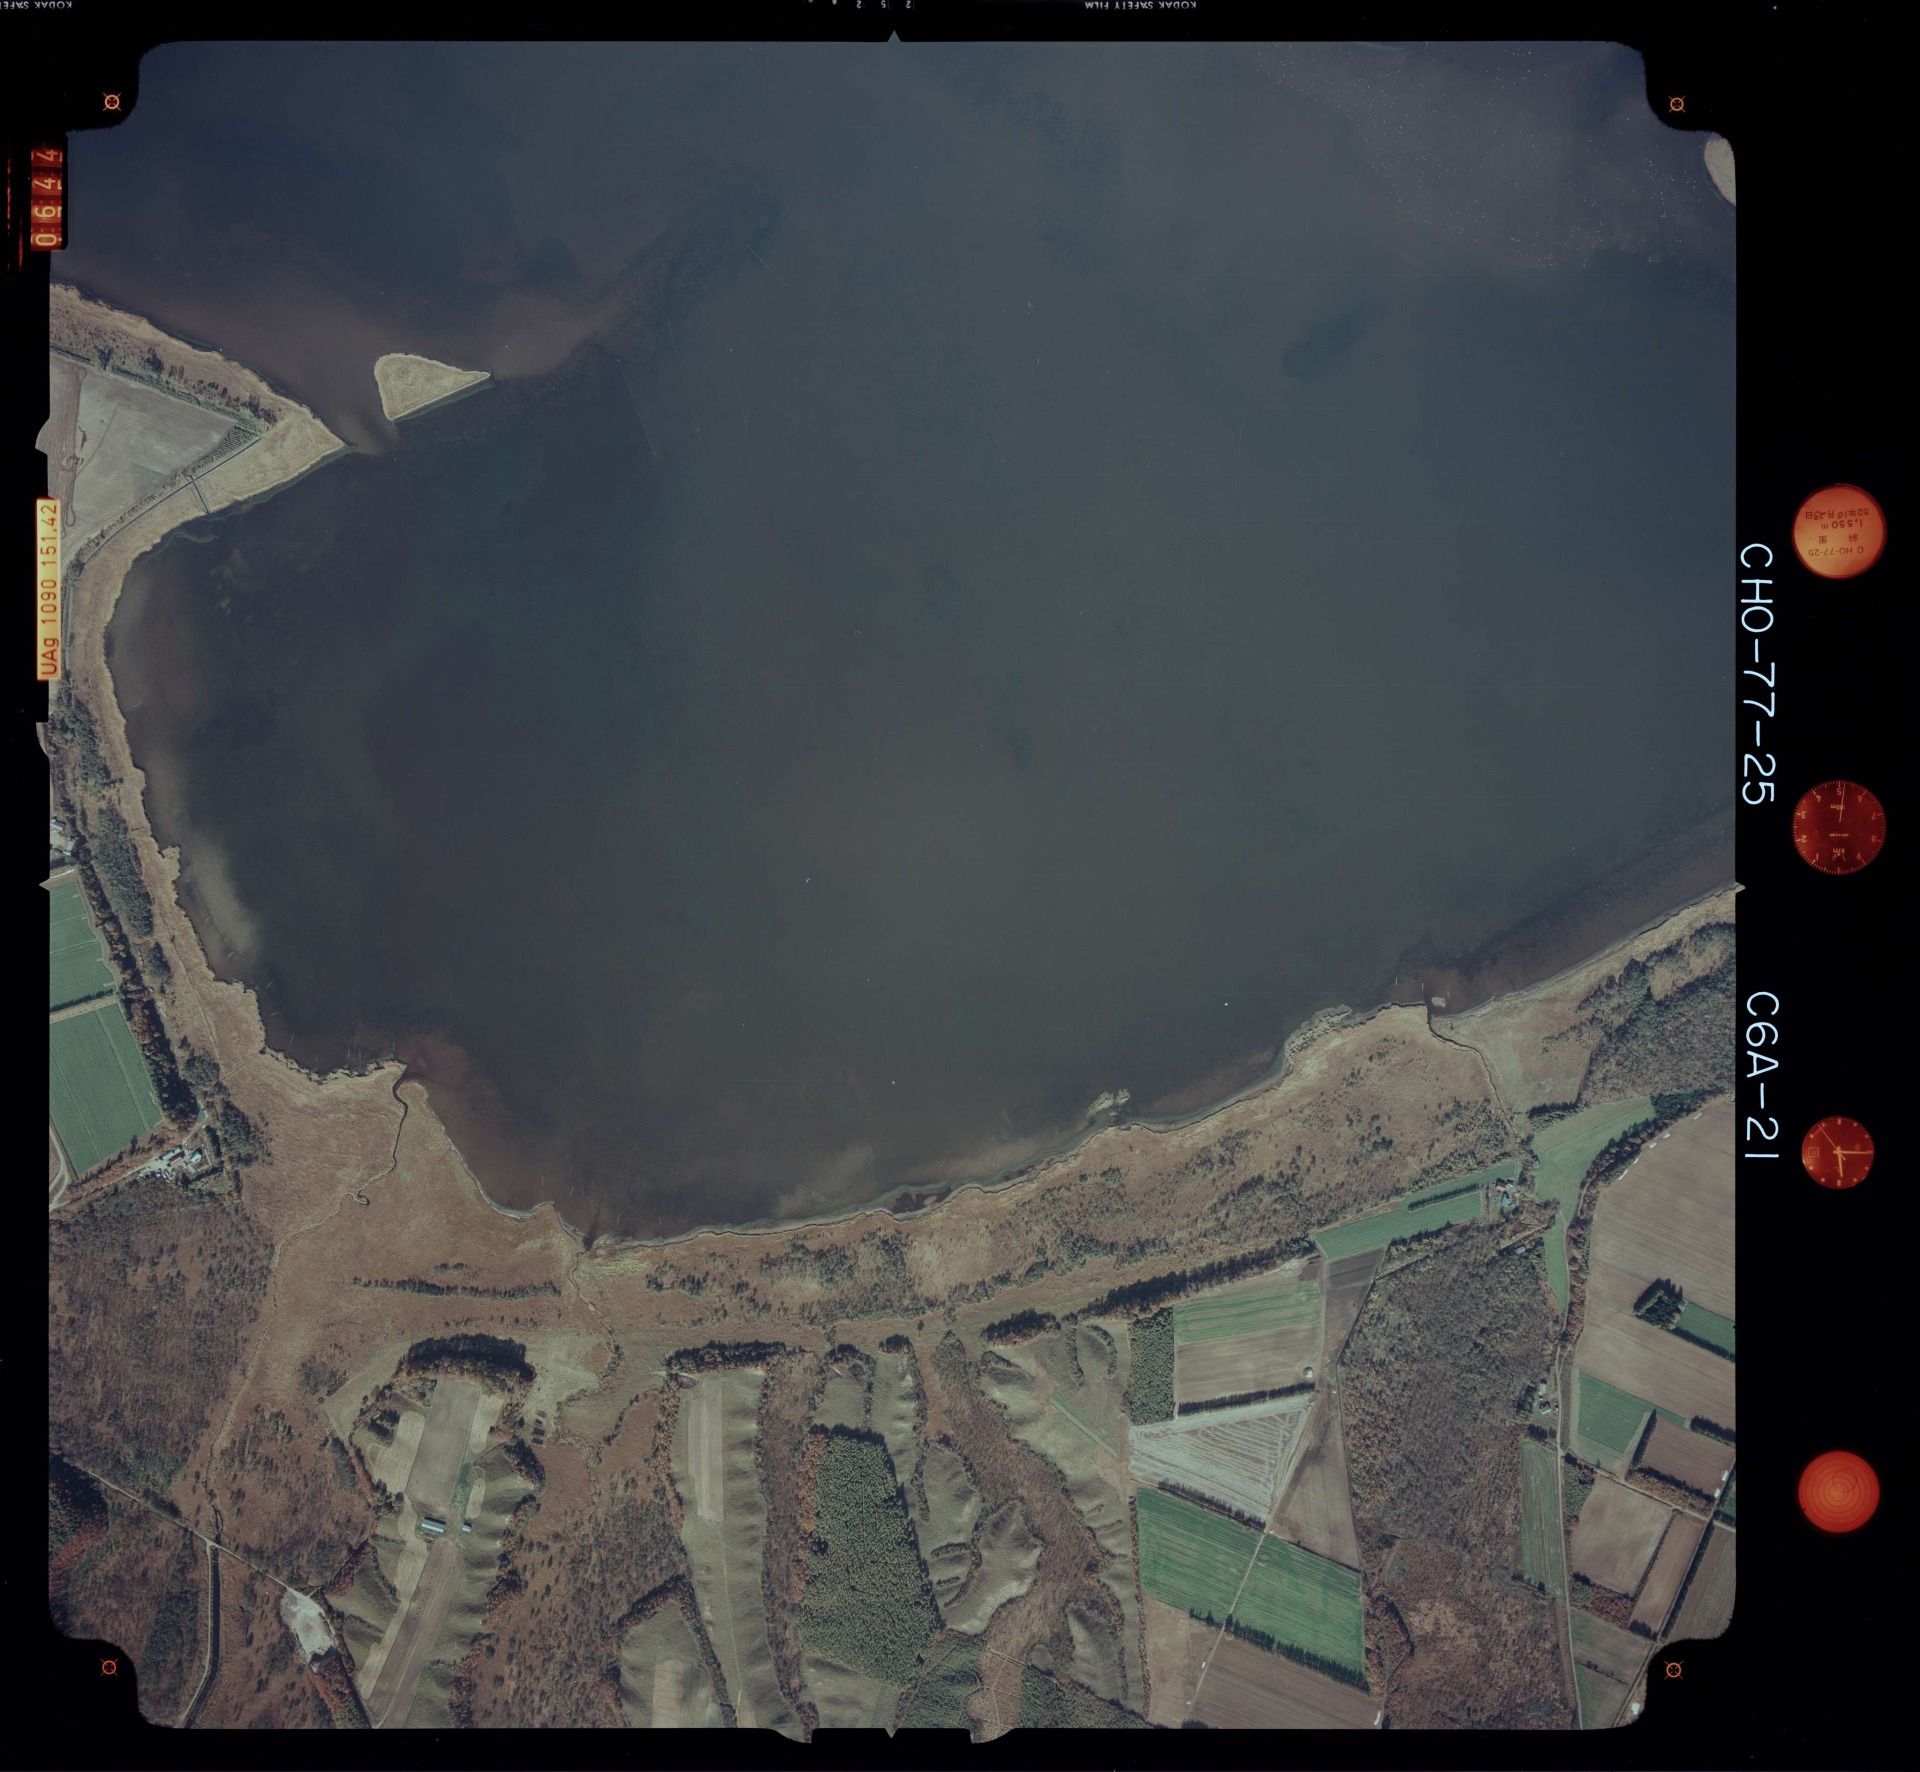 国土地理院 濤沸湖（北海道網走市<br>
斜里郡小清水町） 空撮写真 1977年10月23日